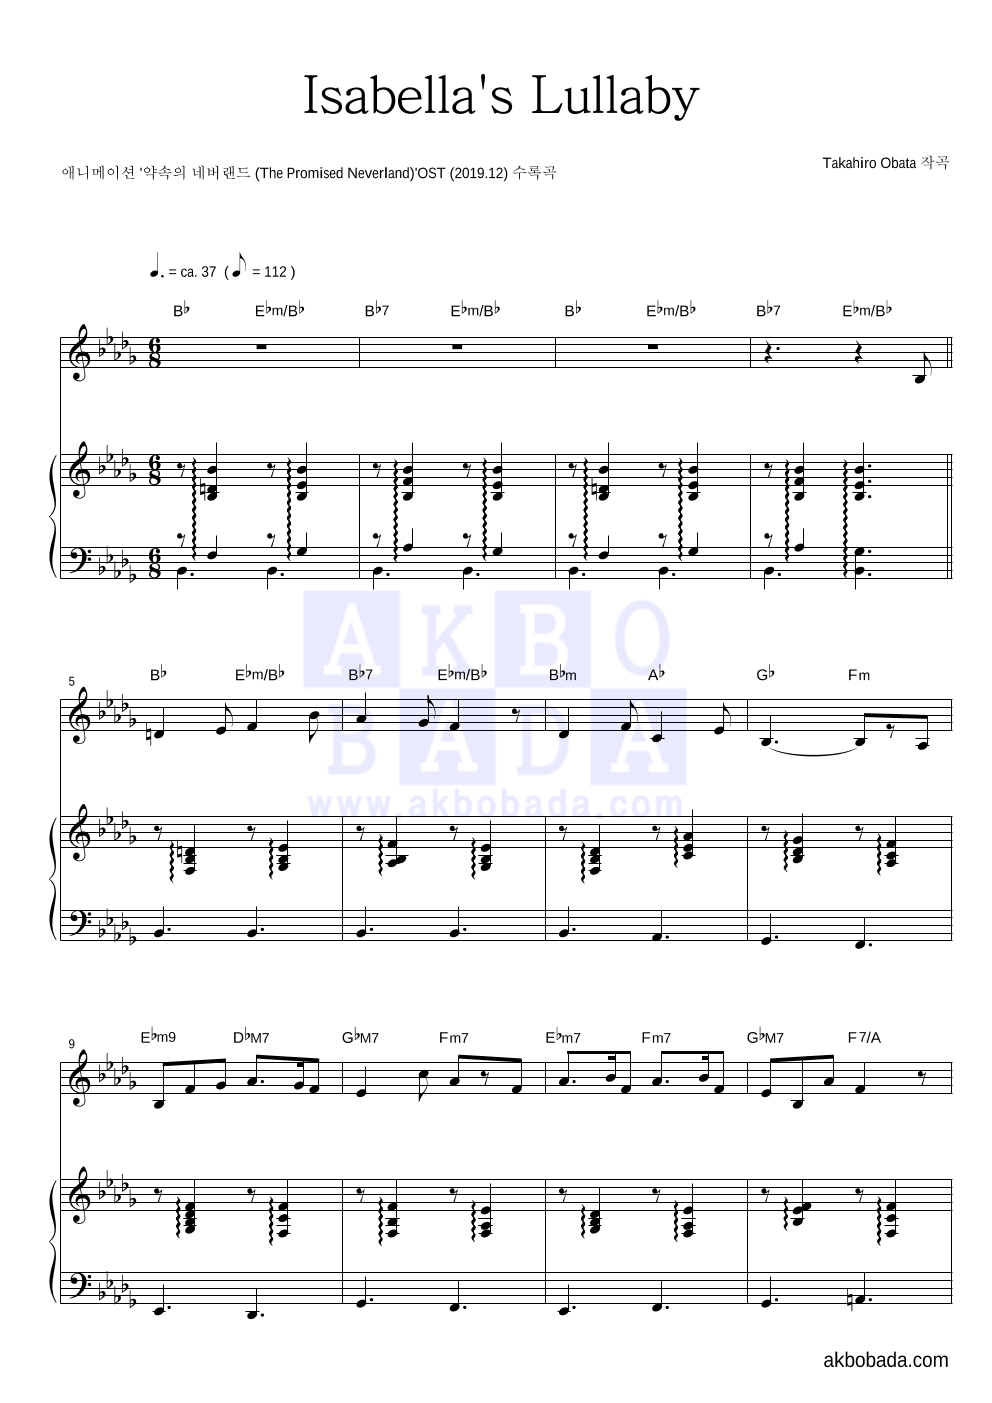 약속의 네버랜드 OST - Isabella's Lullaby 피아노 3단 악보 